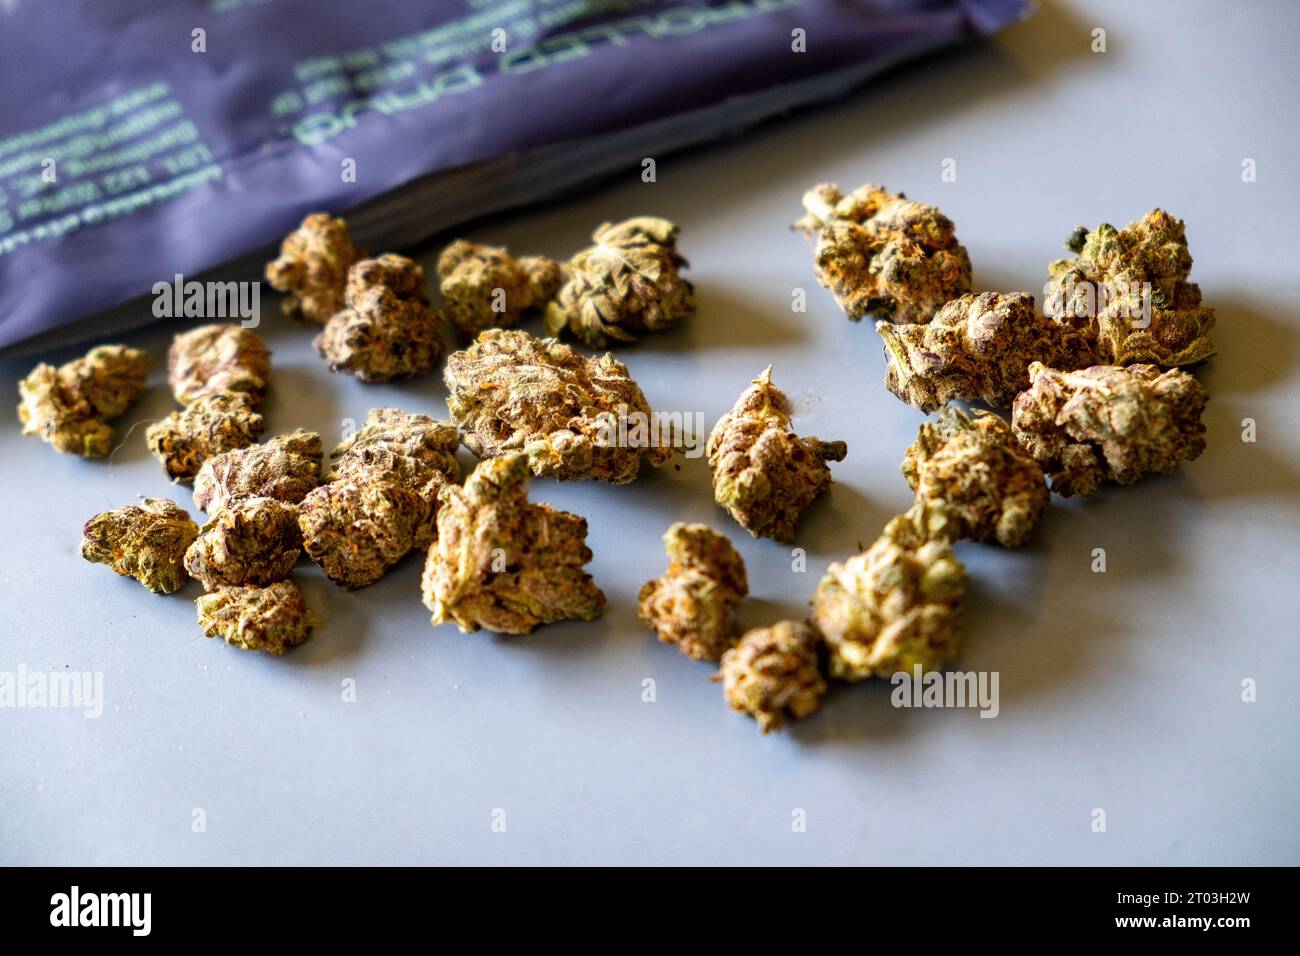 Cannabis medicalmente prescritta coltivata e confezionata in Canada e importata per uso australiano Foto Stock